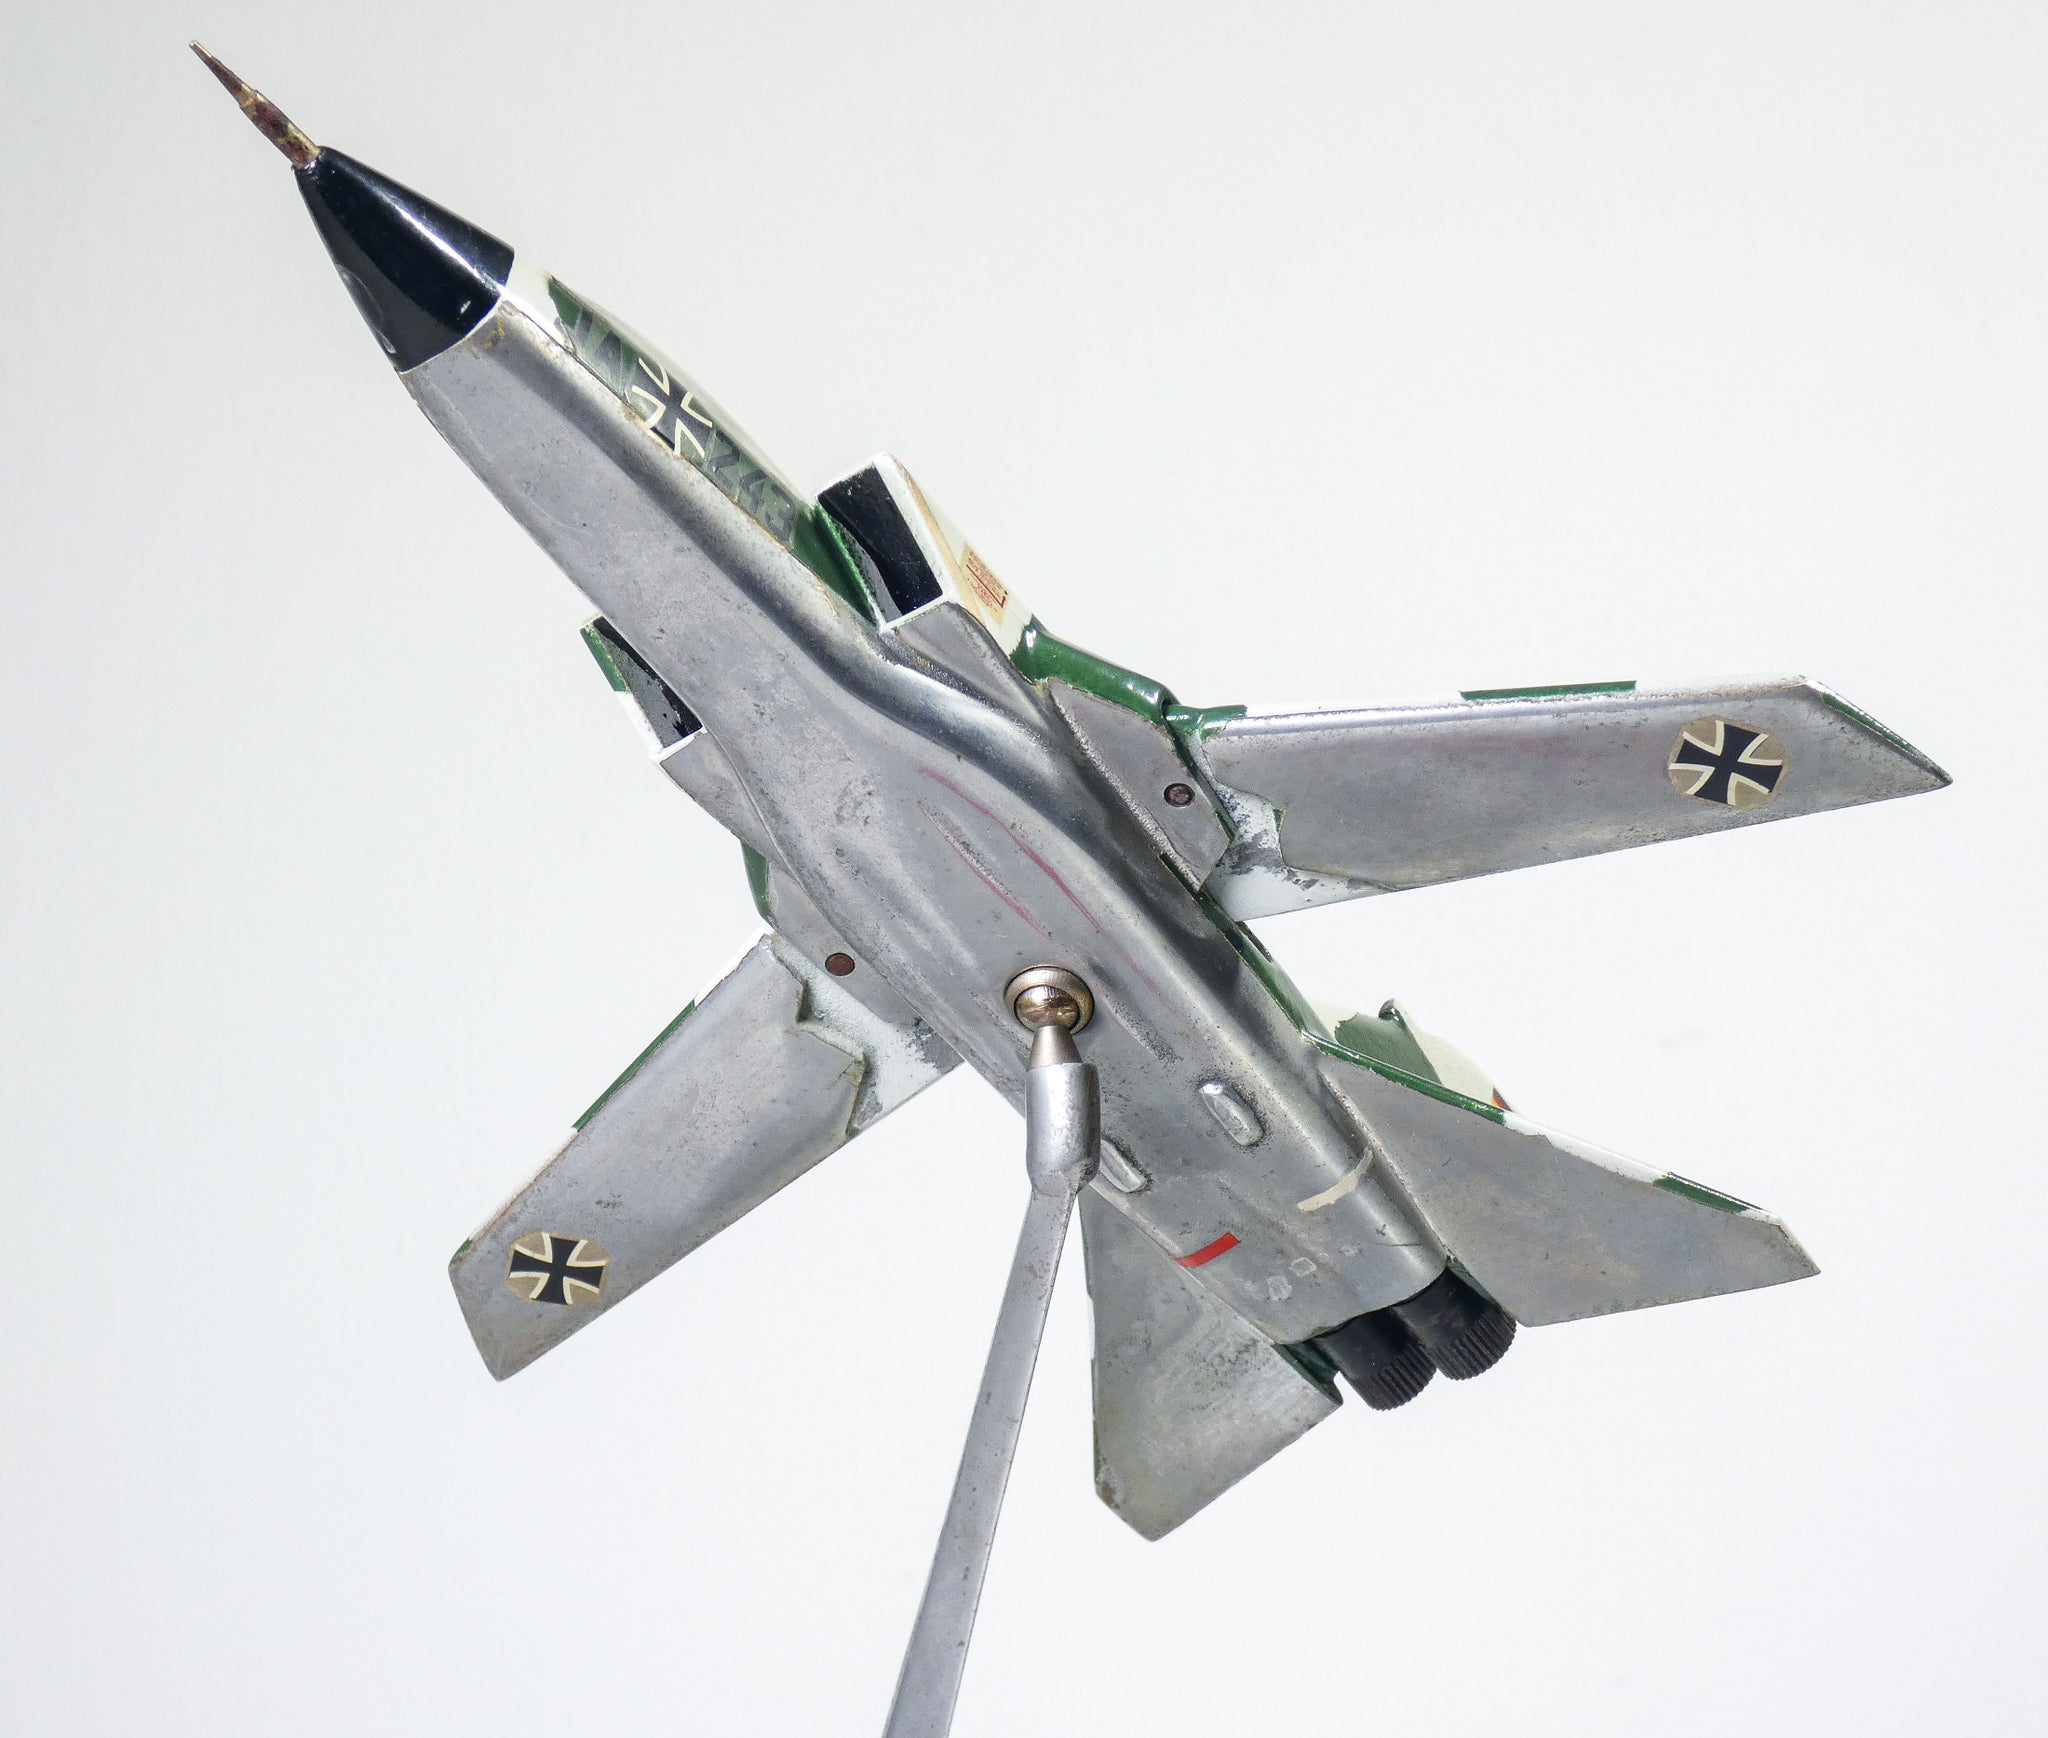 modellino aereo guerra caccia panavia pa 200 tornado mrca alluminio fomaer